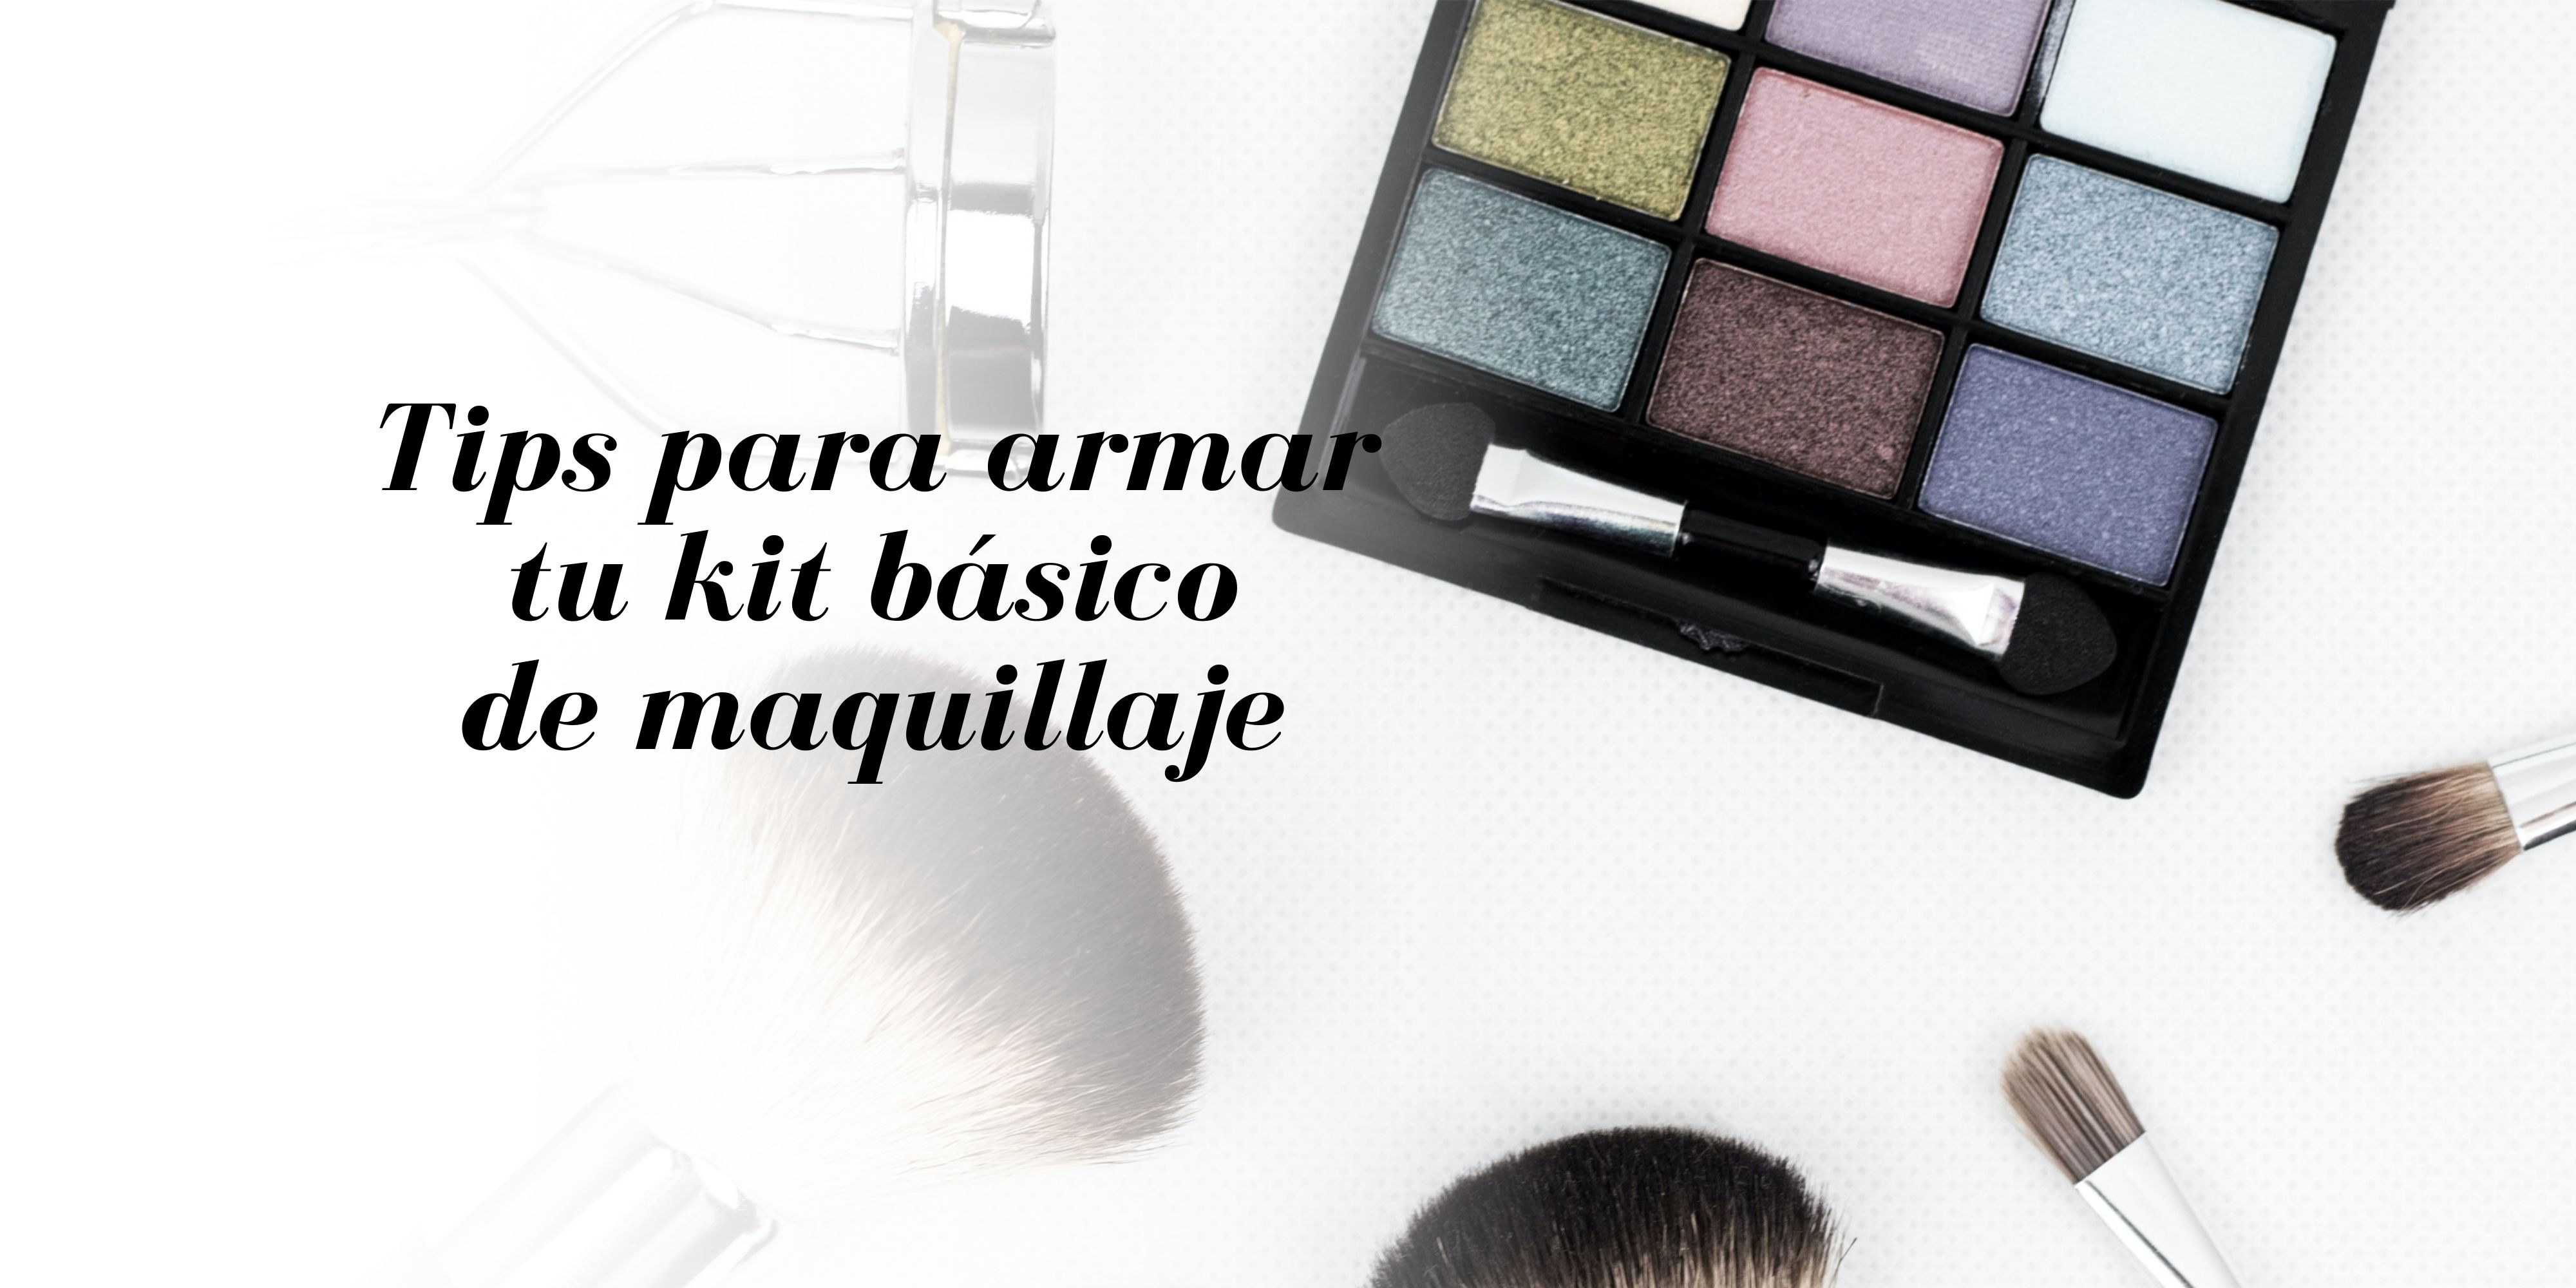 7 productos para armar tu kit de maquillaje básico